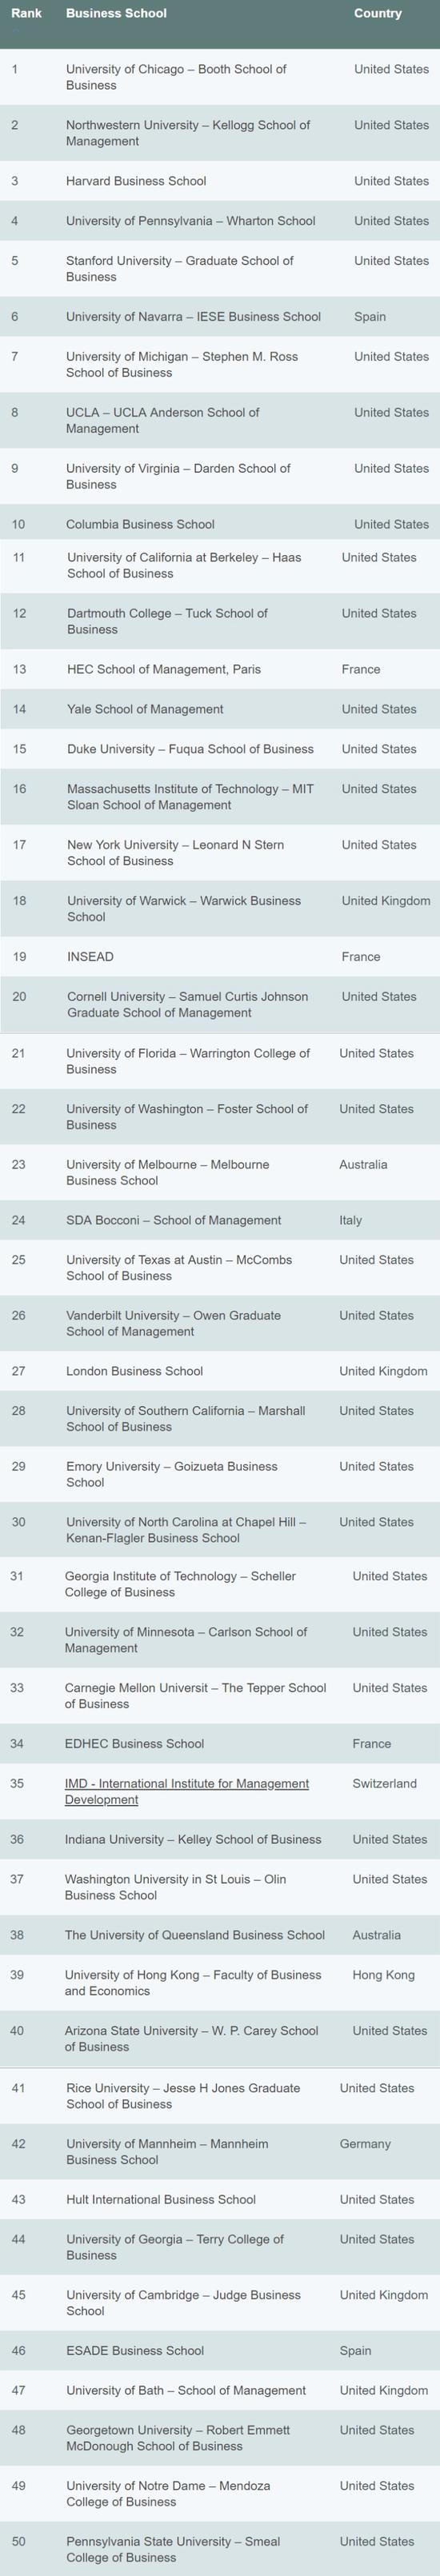 《经济学人》发布2018全球全日制MBA排名